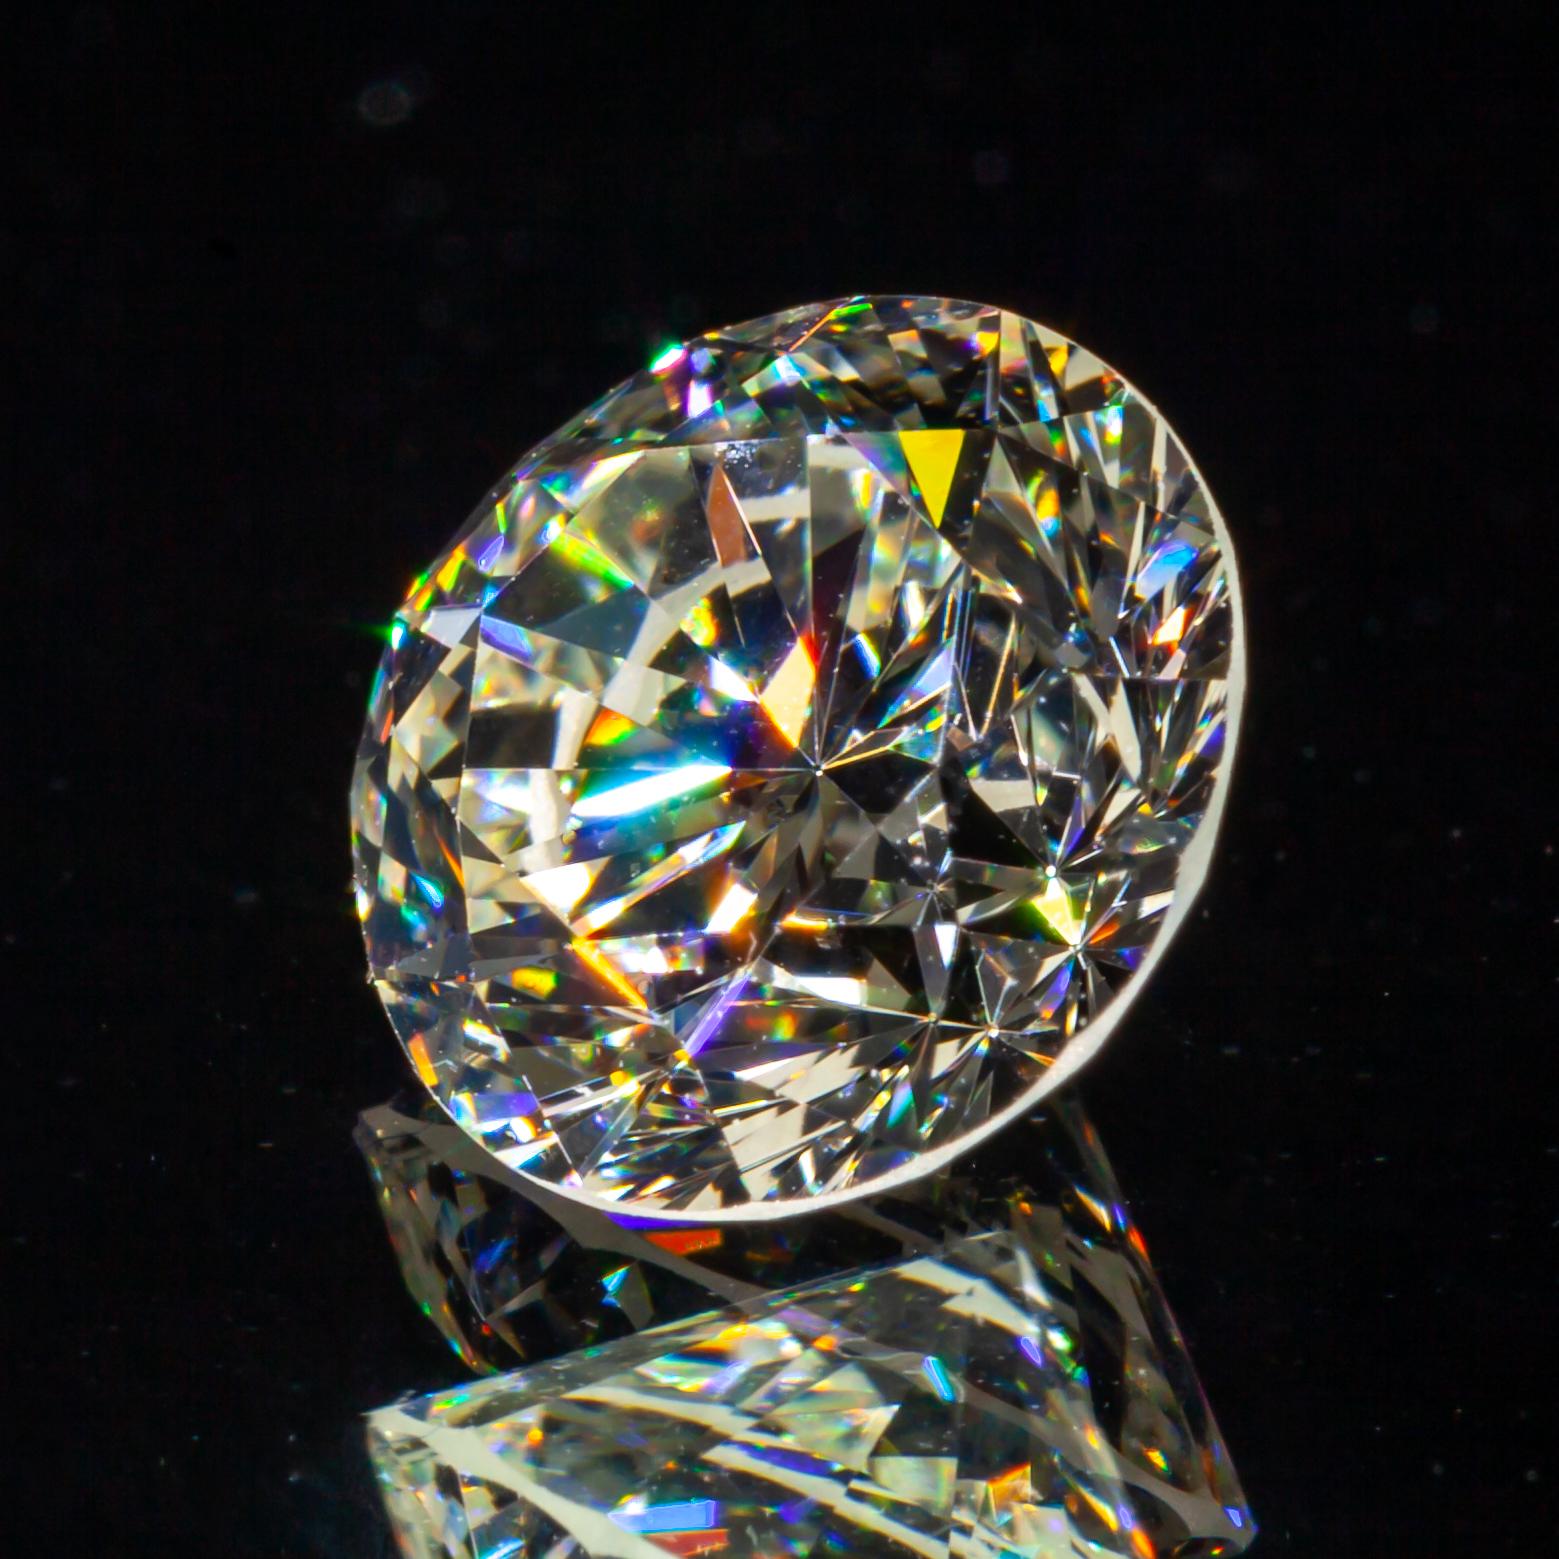 Diamant taille ronde brillant de 1,71 carat non serti K/VS2 certifié GIA

Informations générales sur le diamant
Numéro de rapport GIA : 1182391857
Taille du diamant : Brilliante ronde
Mesures :
7.60  x  7.53  -  4.79

Résultats de la classification